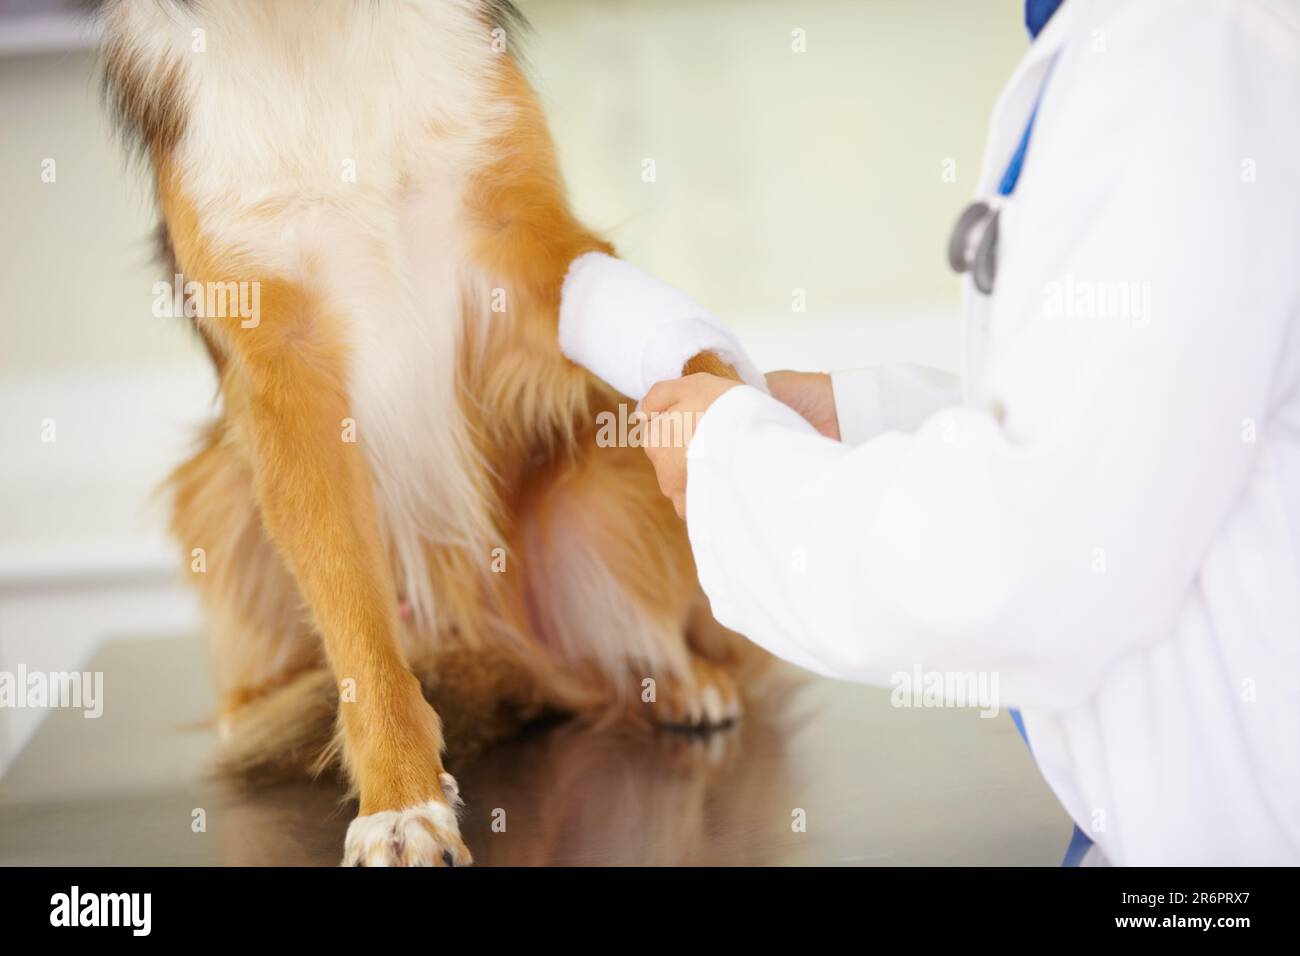 Hände von Tierarzt, Verband oder Hund in der Tierklinik bei einer medizinischen Notfallinspektion oder Unfall. Arzt, helfendes oder verletztes Haustier in Stockfoto